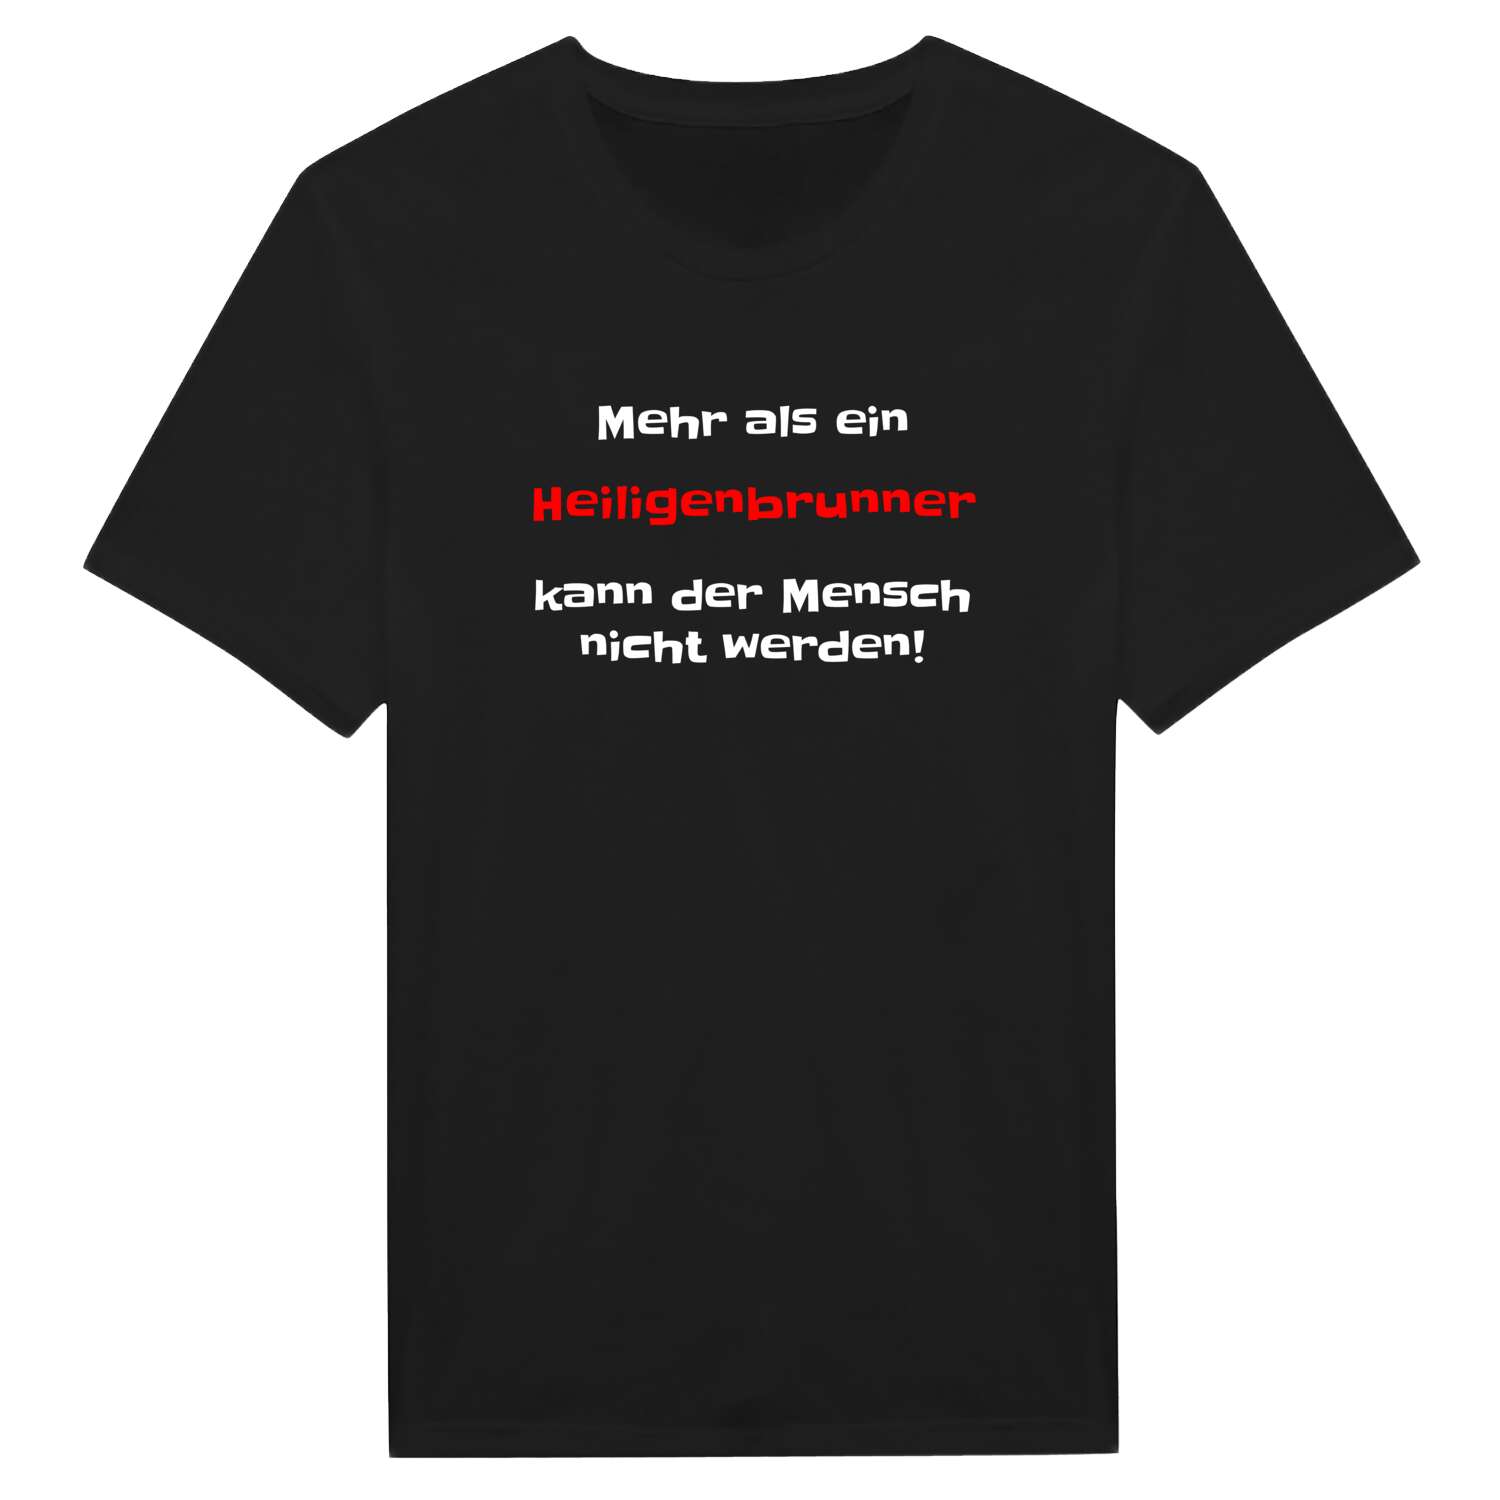 Heiligenbrunn T-Shirt »Mehr als ein«